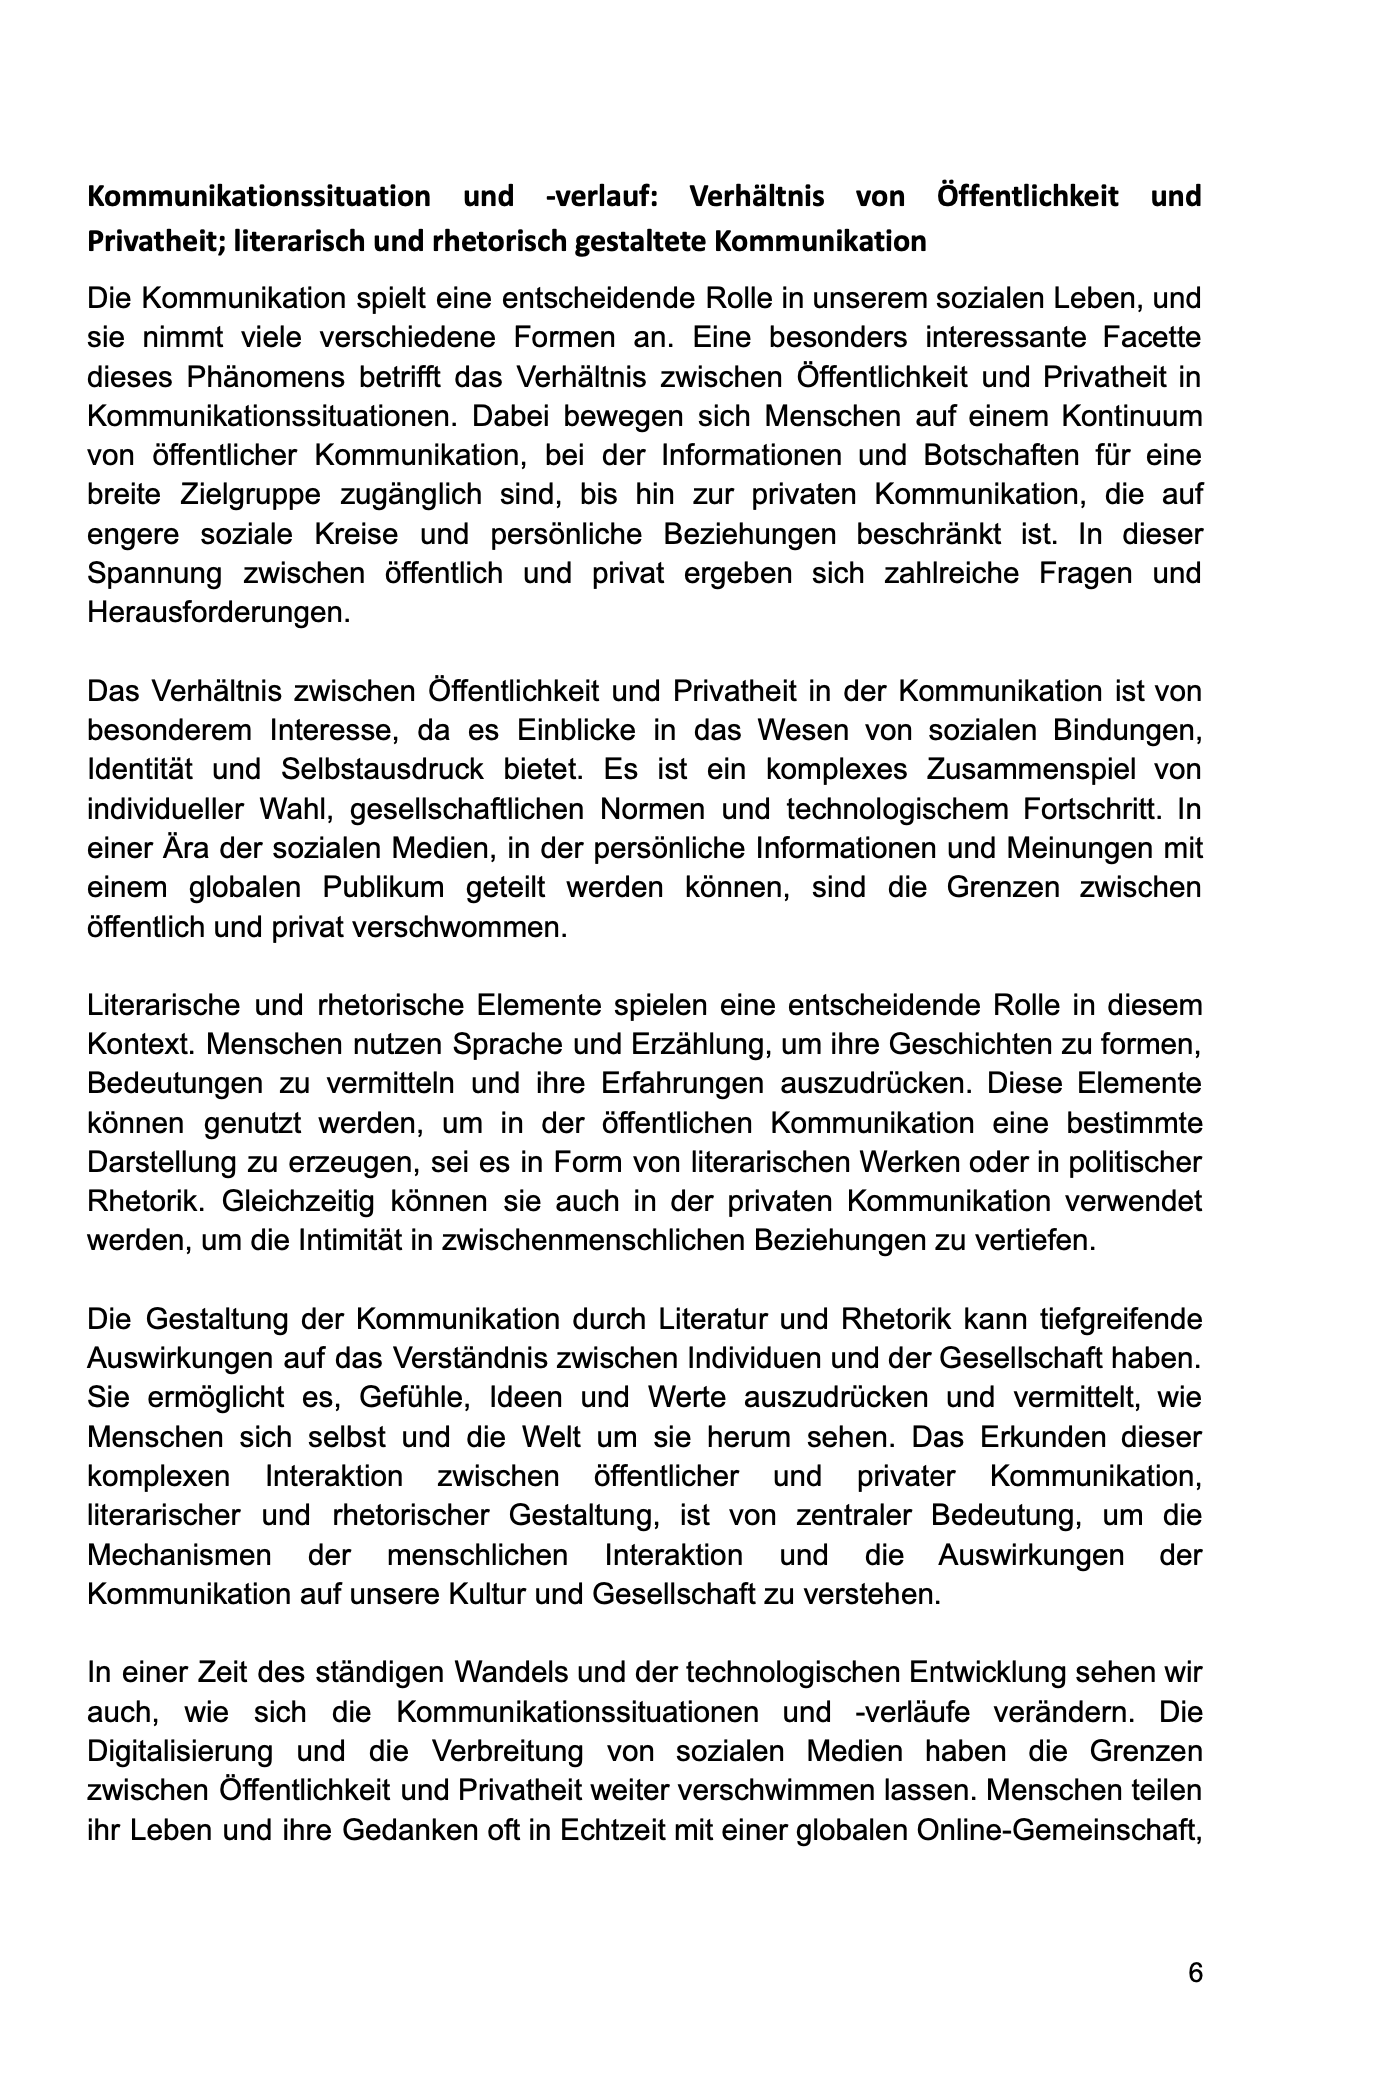 Lernheft: "Kommunikation in Politik und Gesellschaft" (Lehrplaninhalte Deutsch-Abitur)